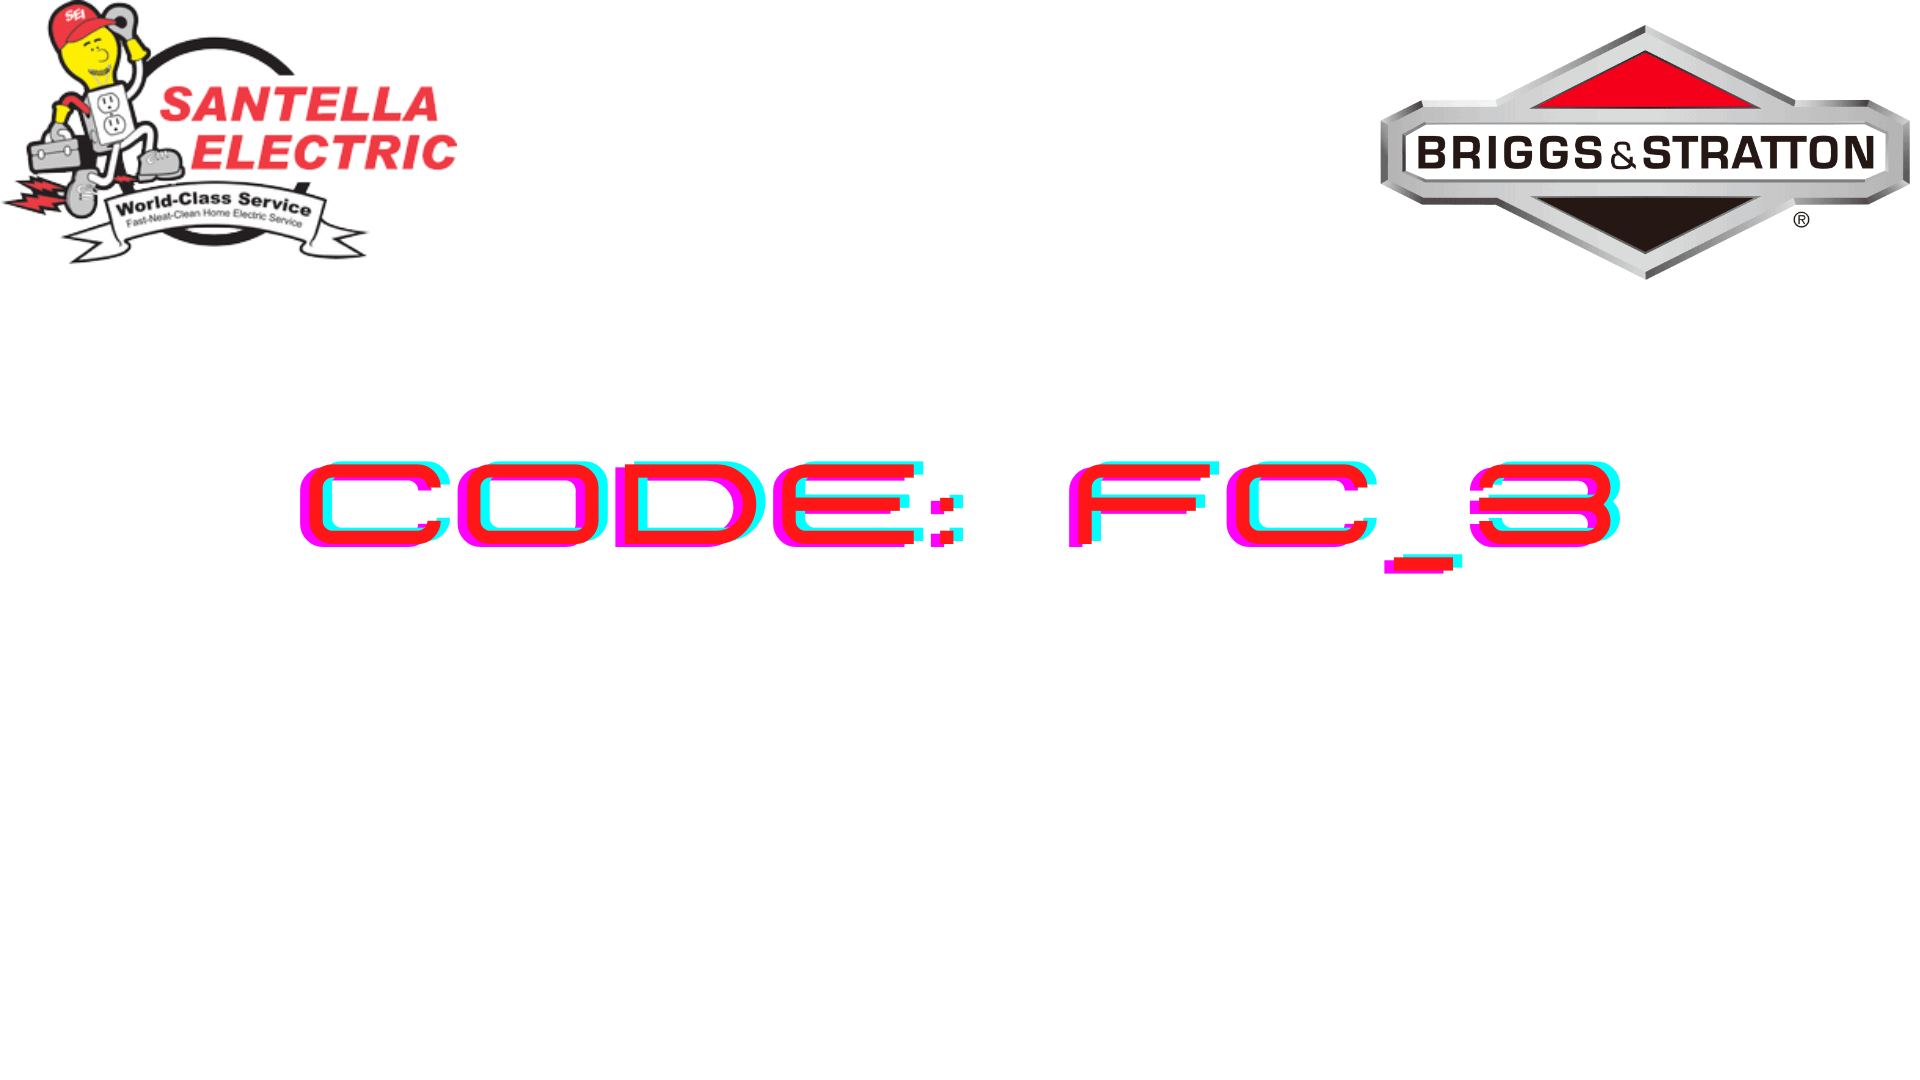 Briggs and Stratton Error Code - Code FC_3